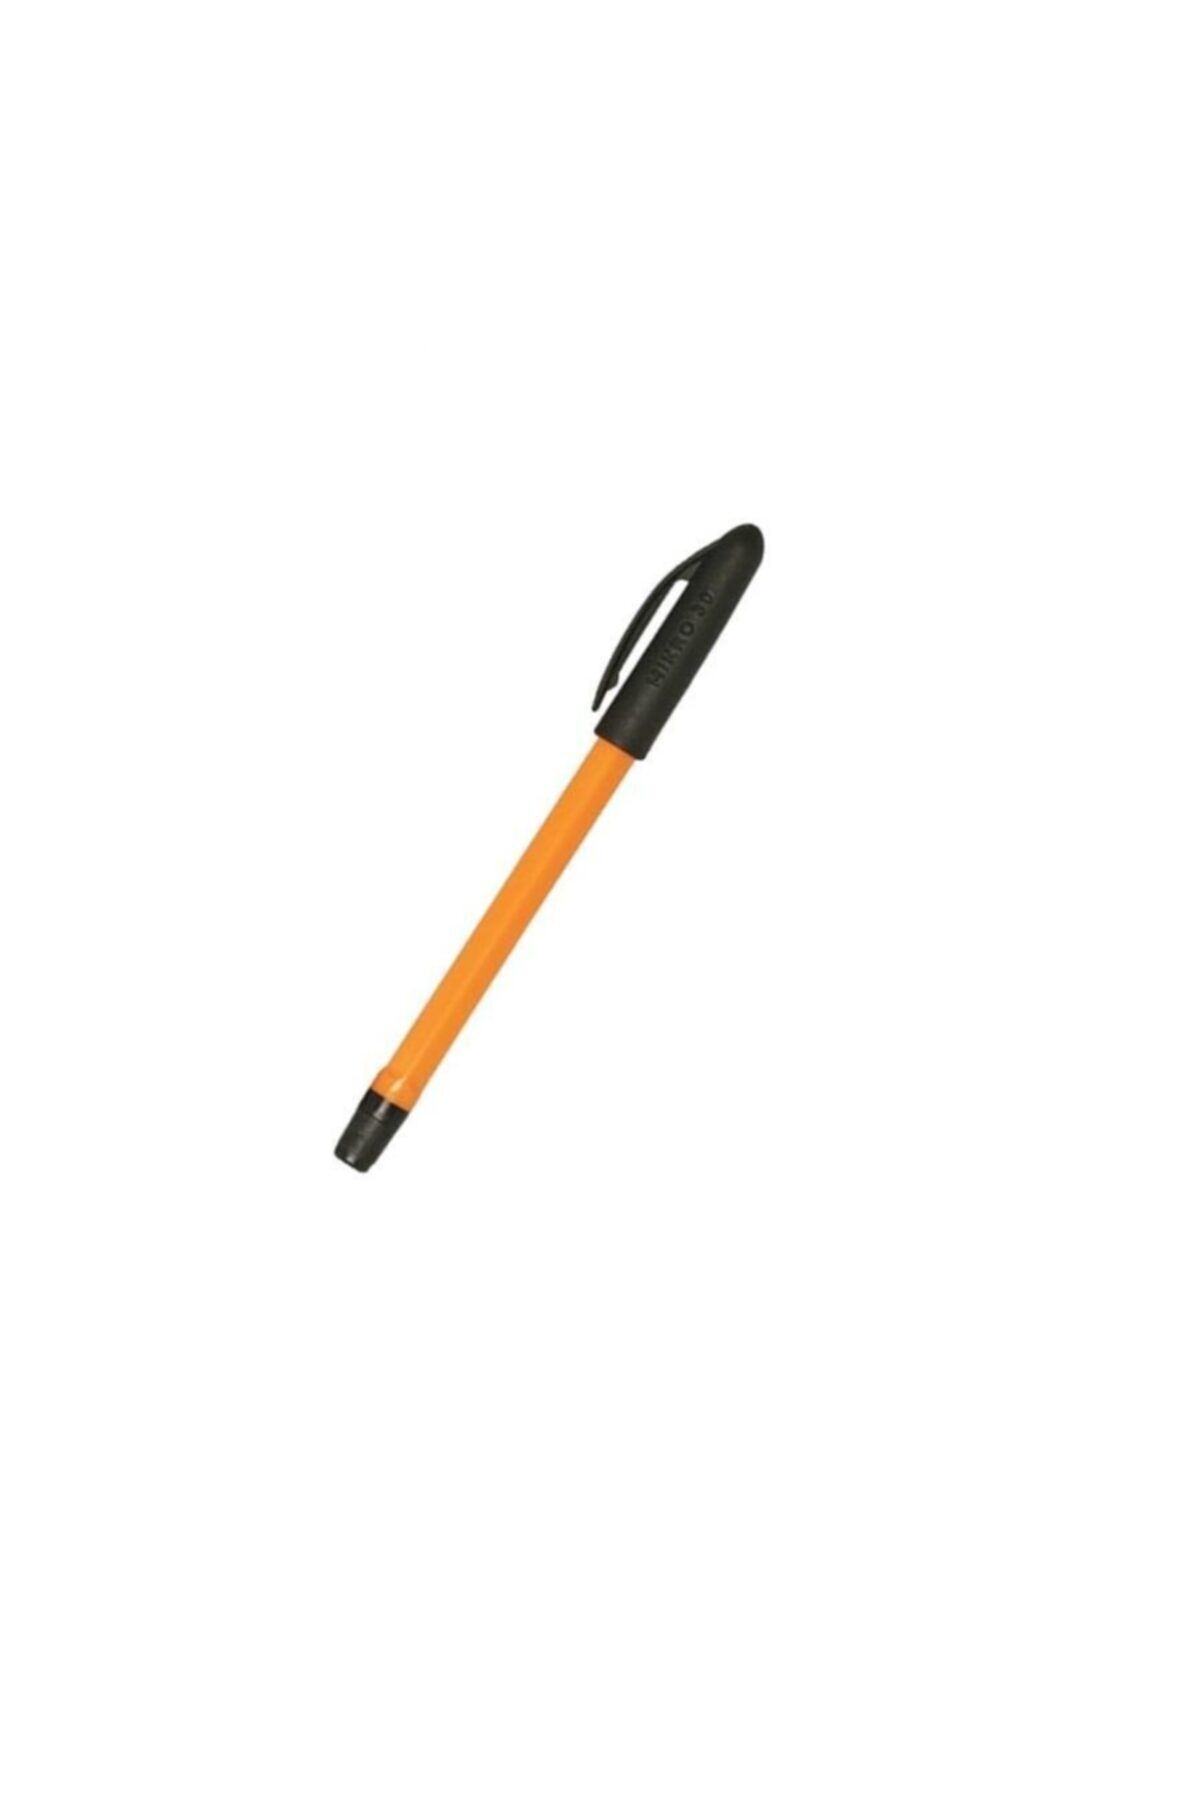 Faber Castell Siyah Tükenmez Kalem 60 Adet 1.0mm Uç Mikro Tükenmez Kalem 60 Adet Siyah Renk 1.0mm